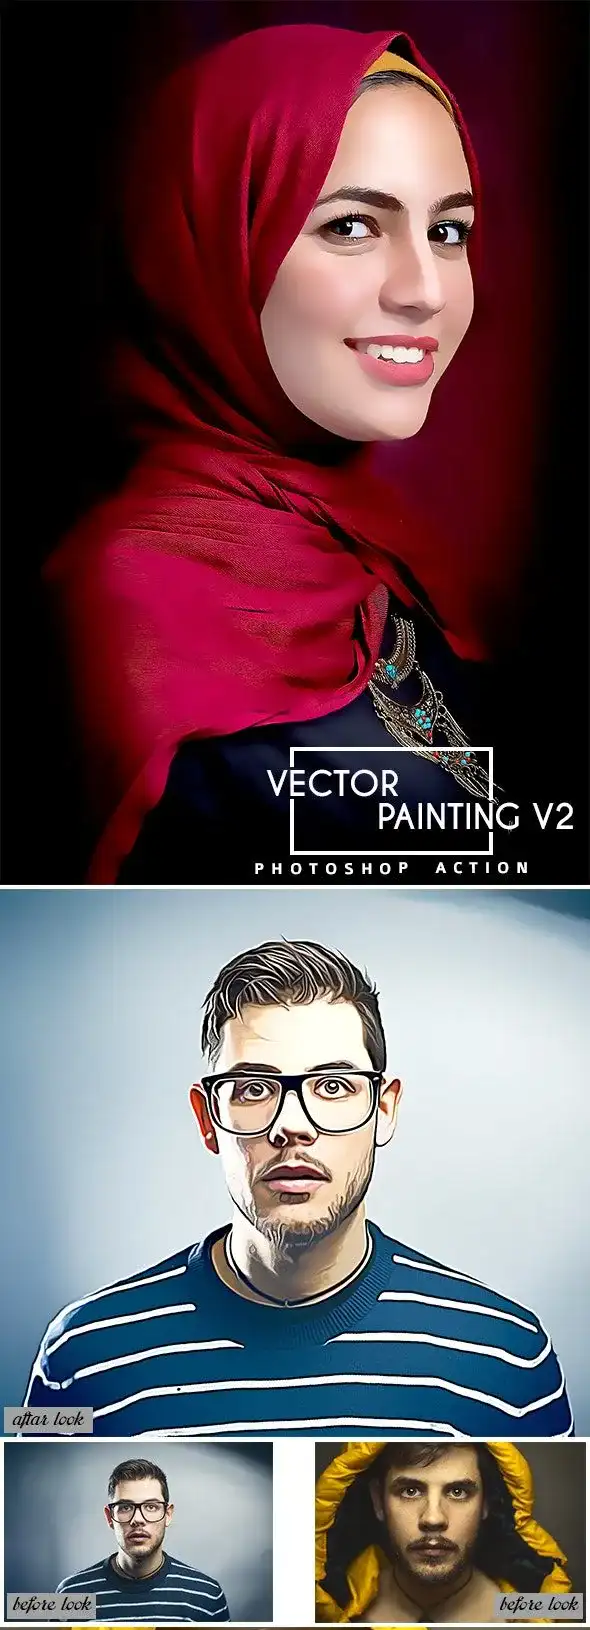 اکشن فوتوشاپ نقاشی Vector Painting V2 Photoshop Action